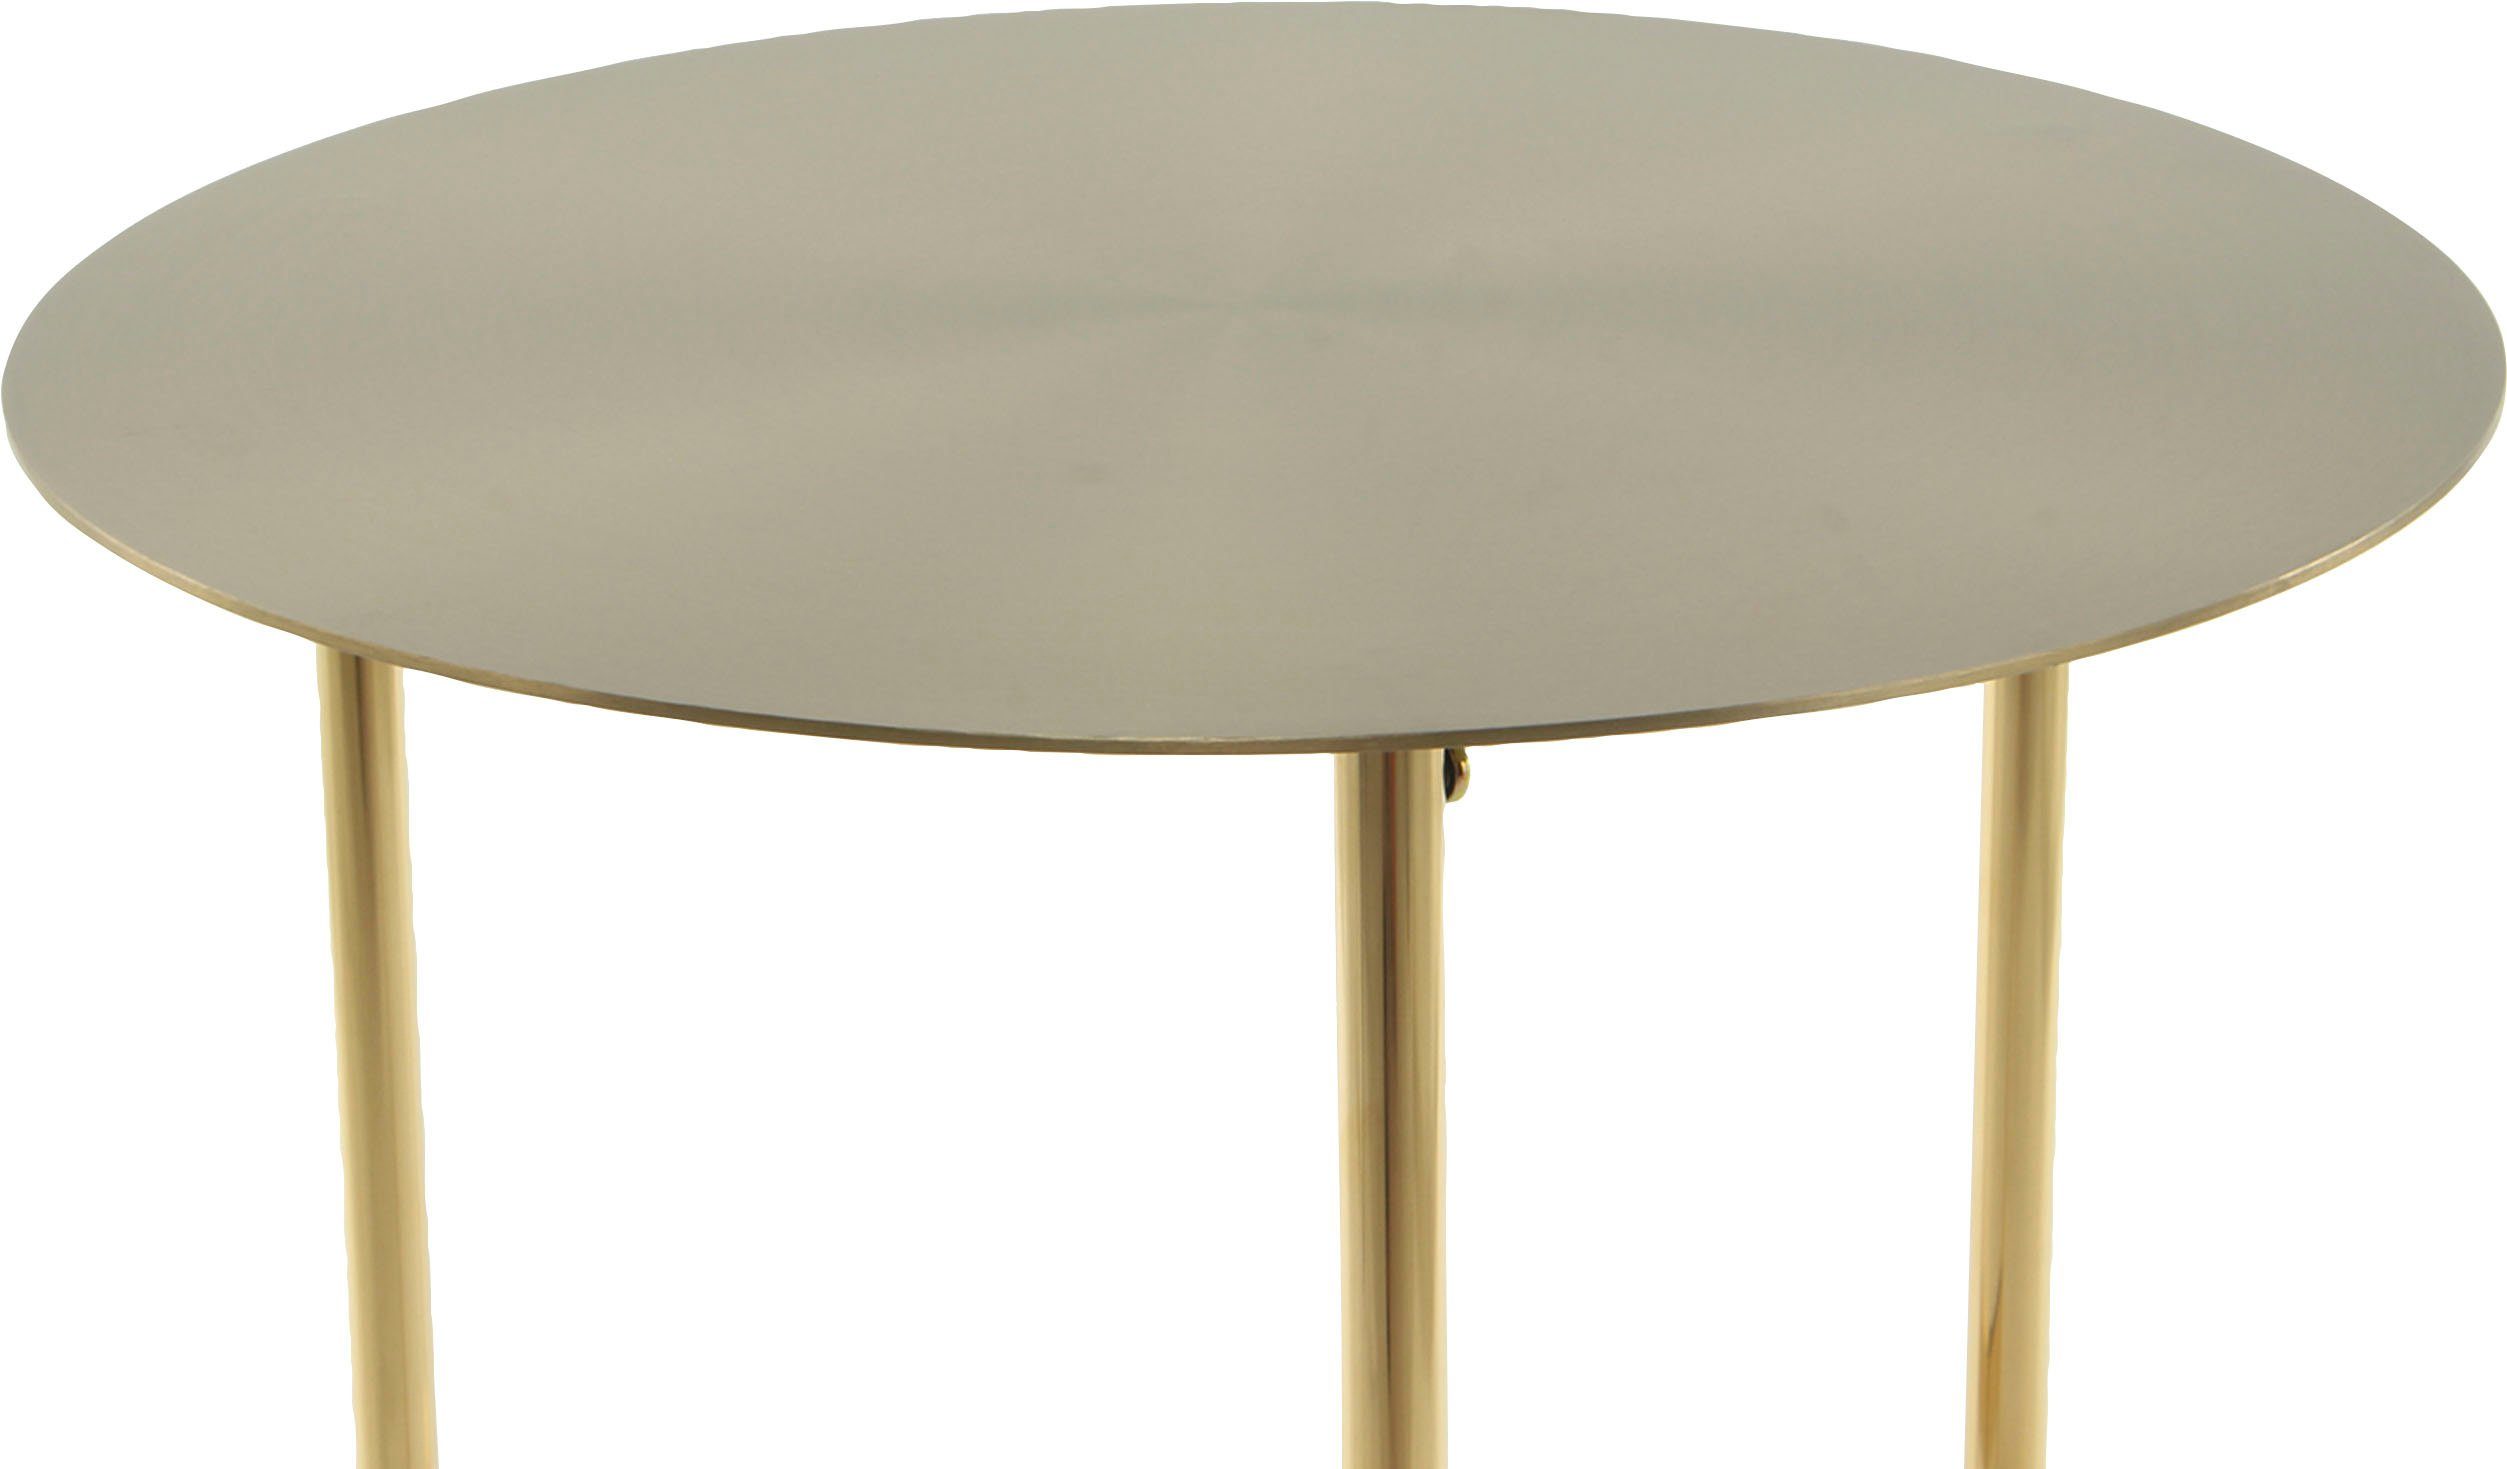 Kayoom Beistelltisch runde Ablagefläche aus Gestelldesign Gold minimalistisches Pema, Edelstahl